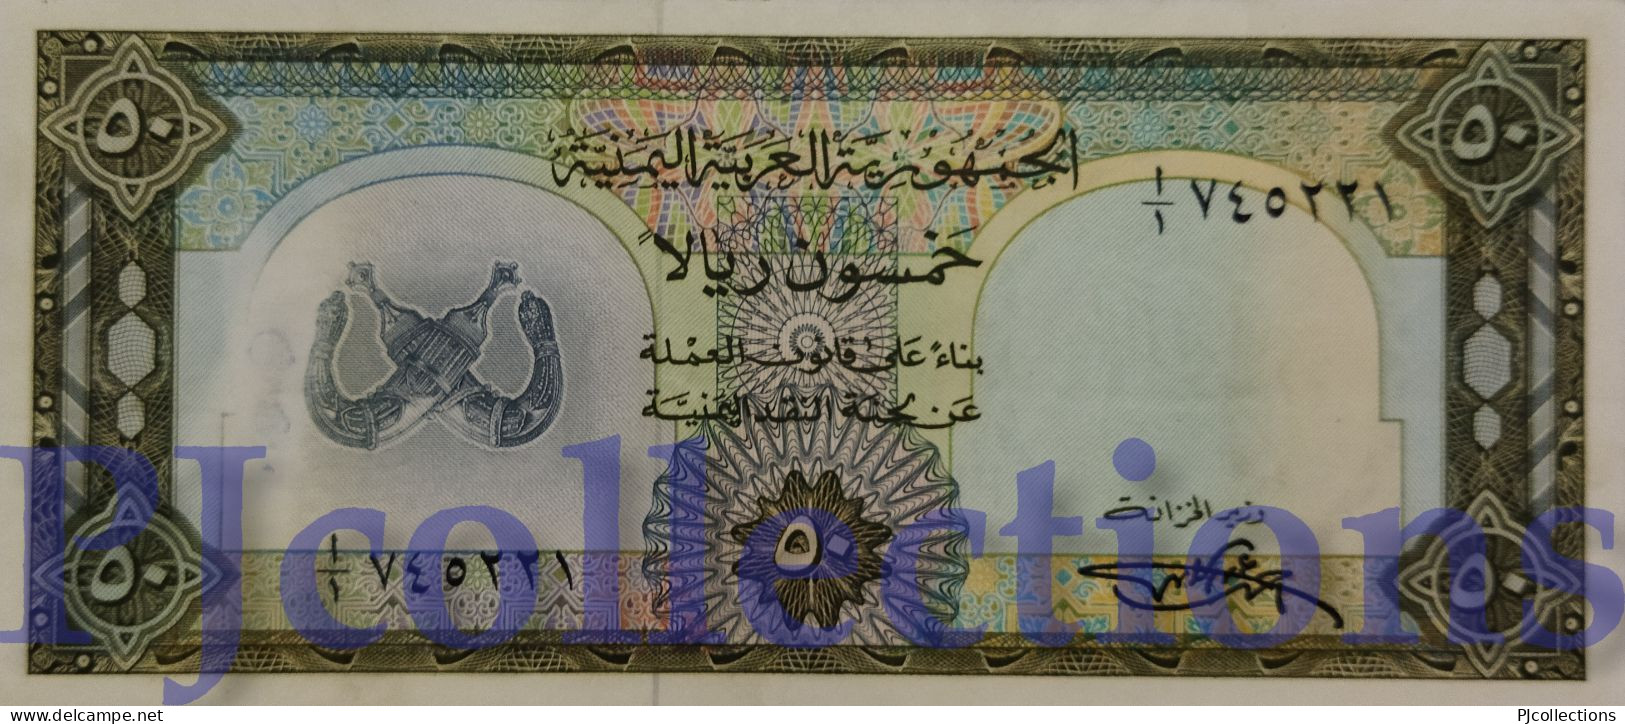 YEMEN ARAB REPUBLIC 50 RIELS 1971 PICK 10 XF+ - Yémen